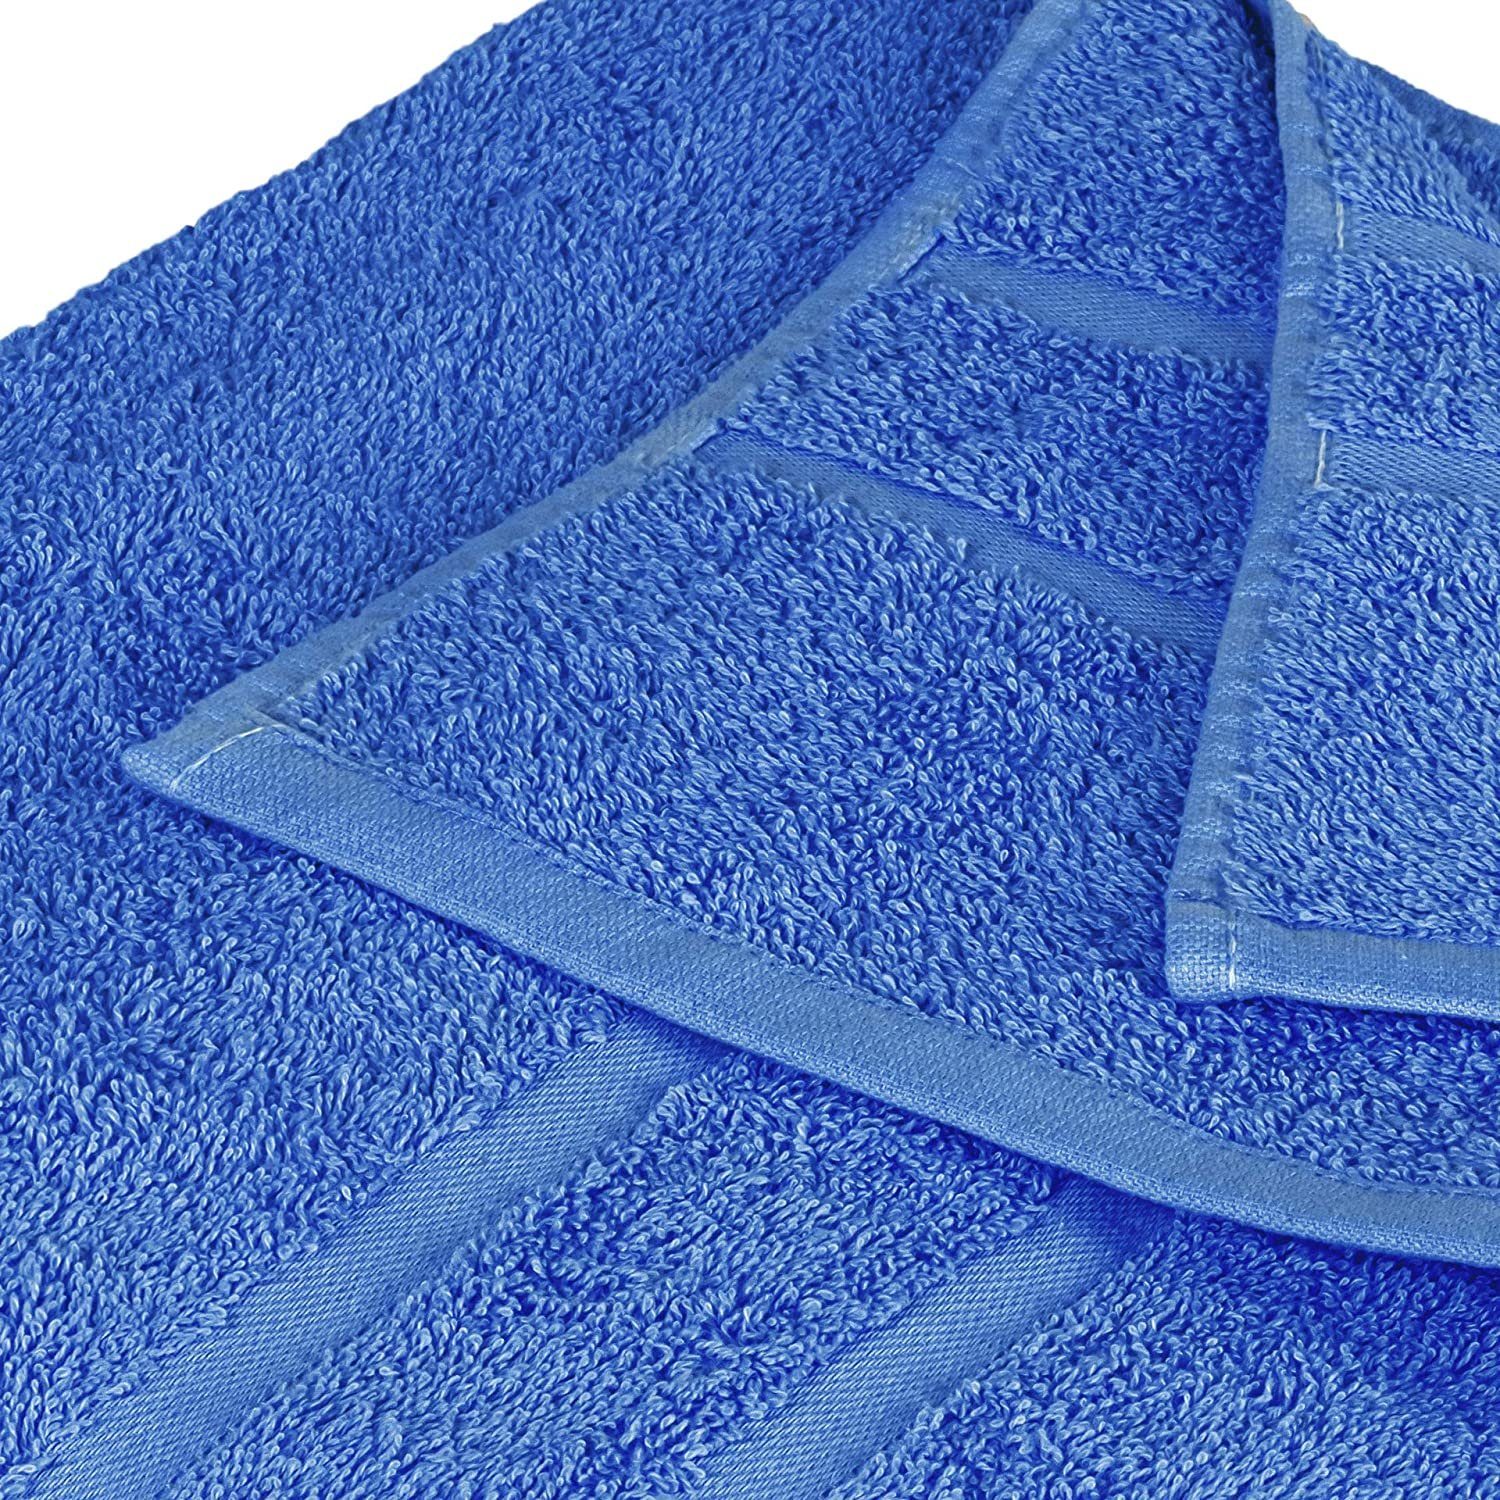 (8 Handtuch SET Baumwolle verschiedenen 500 100% Handtücher GSM Farben Blau in Gästehandtuch 4x 8er Teilig) Handtuch Pack, StickandShine 4x Baumwolle Set GSM 500 100% Frottee als